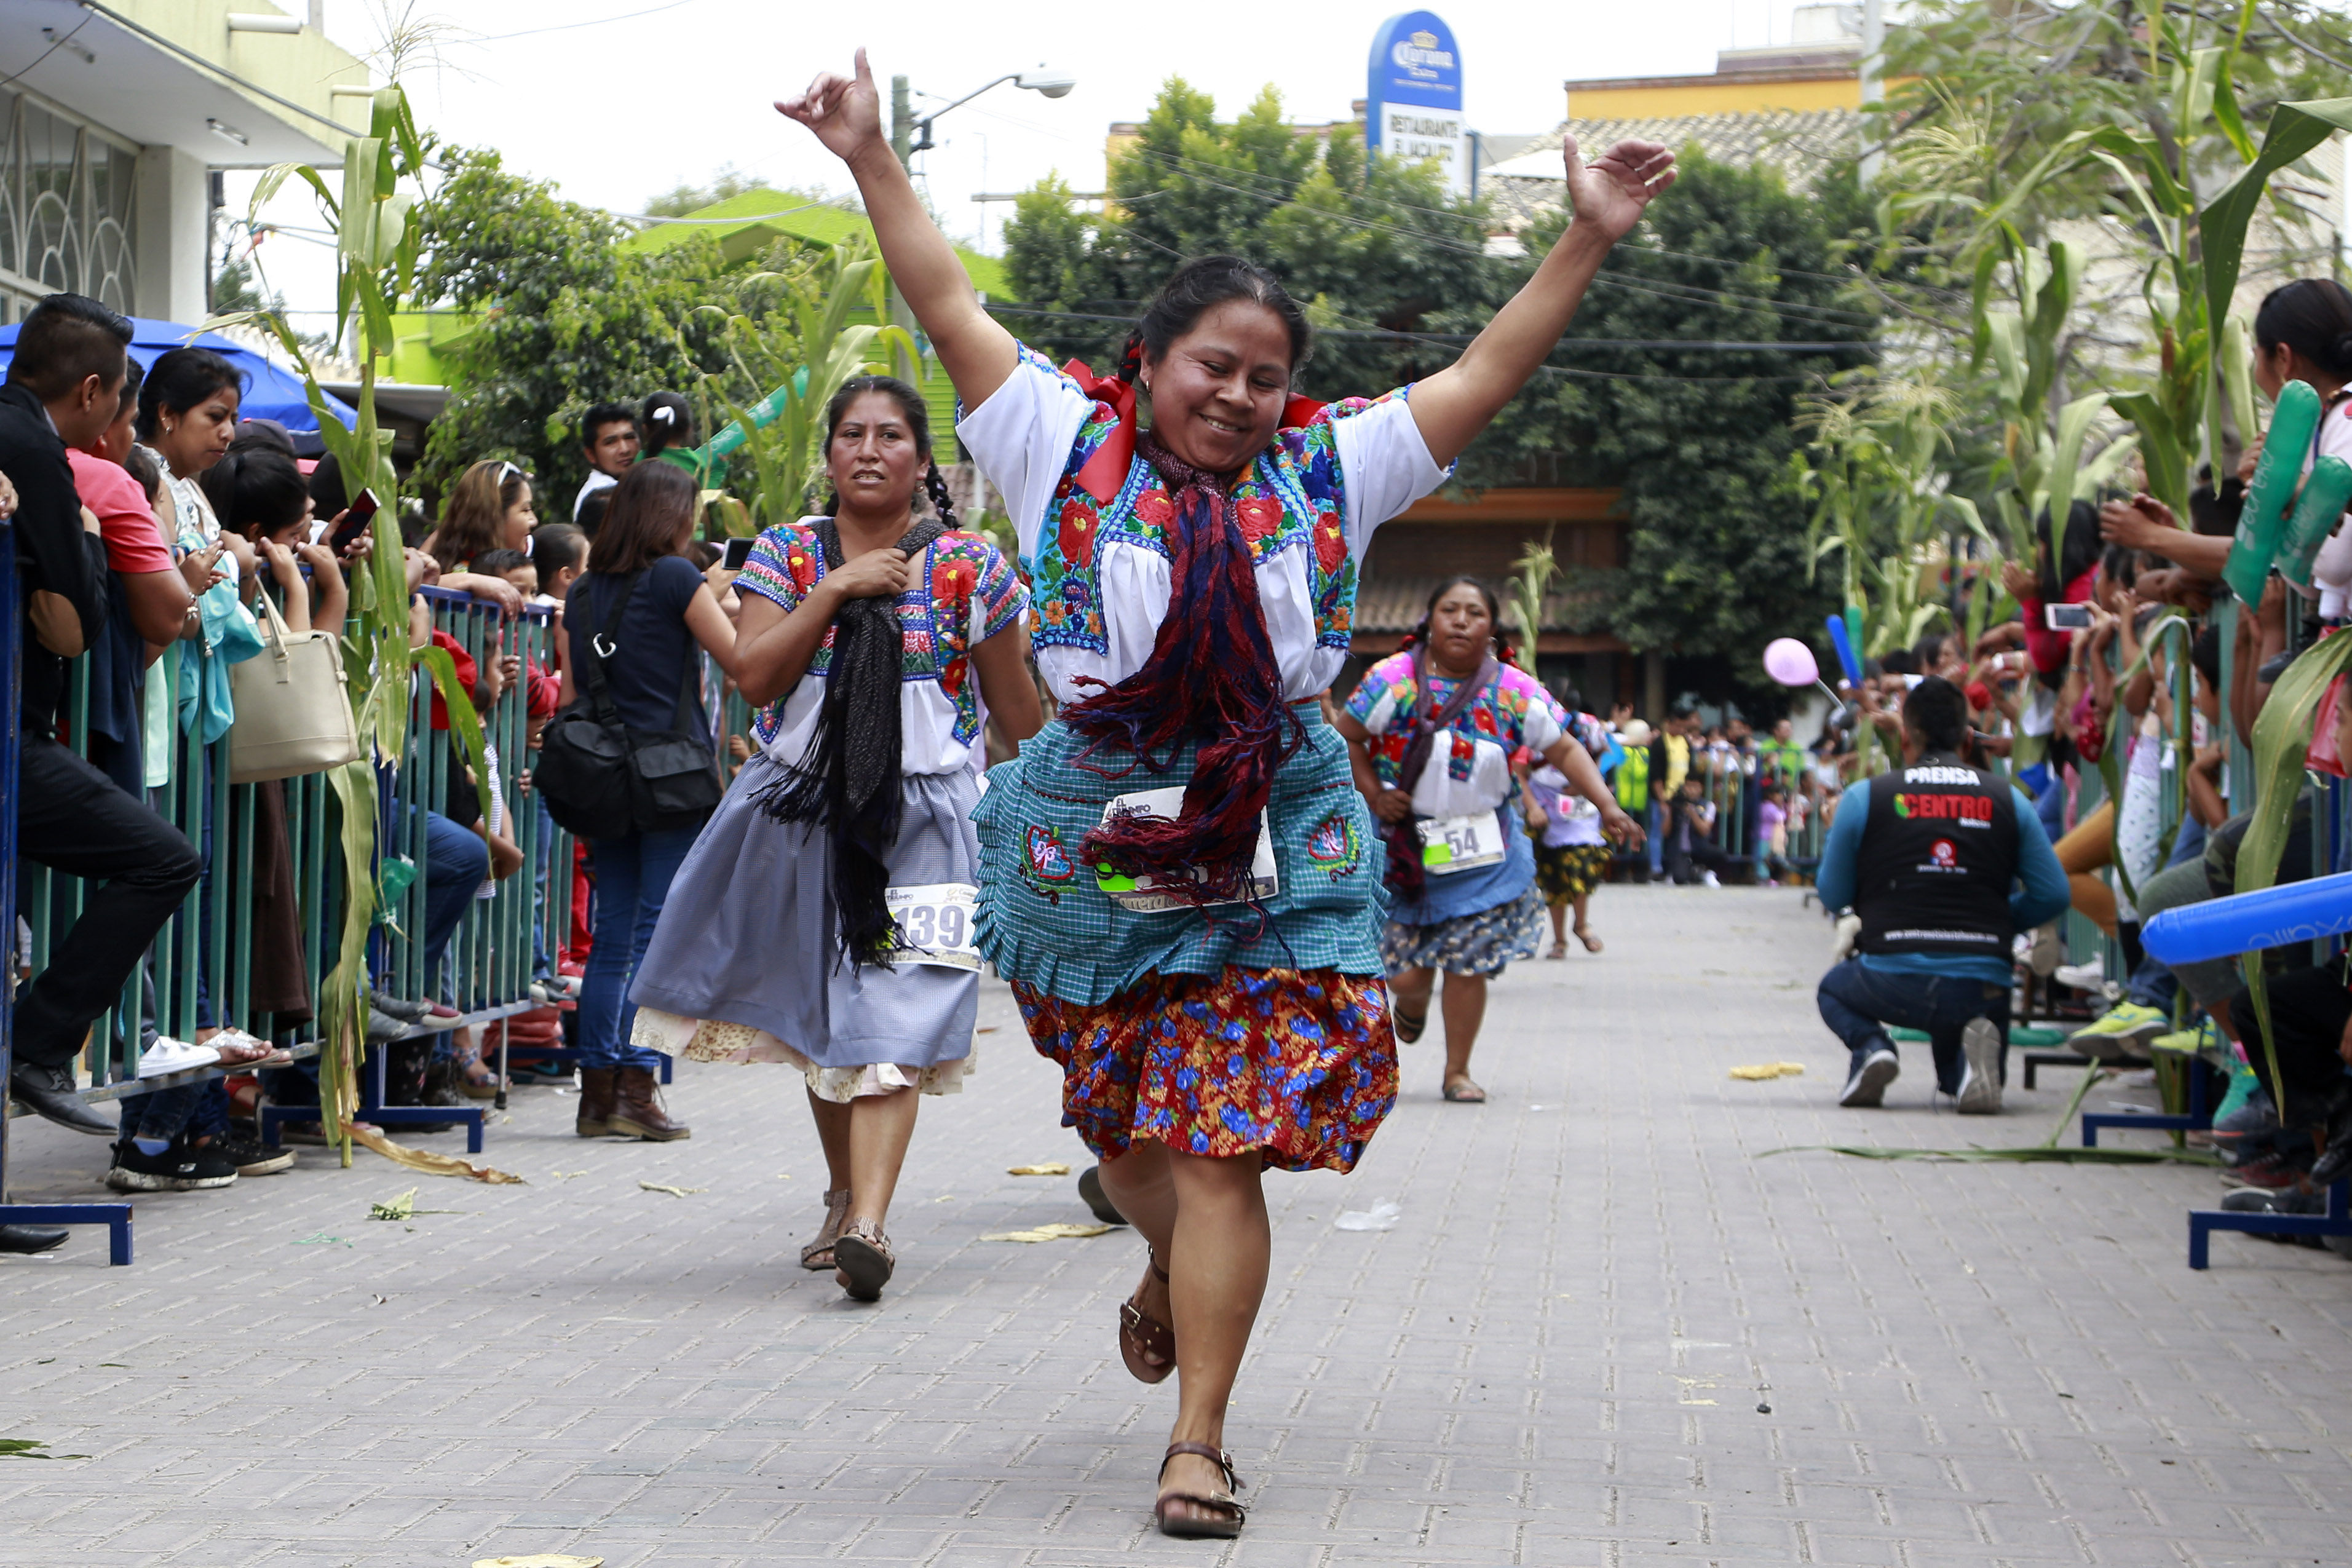  Con la “Carrera de la Tortilla”, más de 300 mujeres rinden homenaje a este alimento en Tehuacán, Puebla